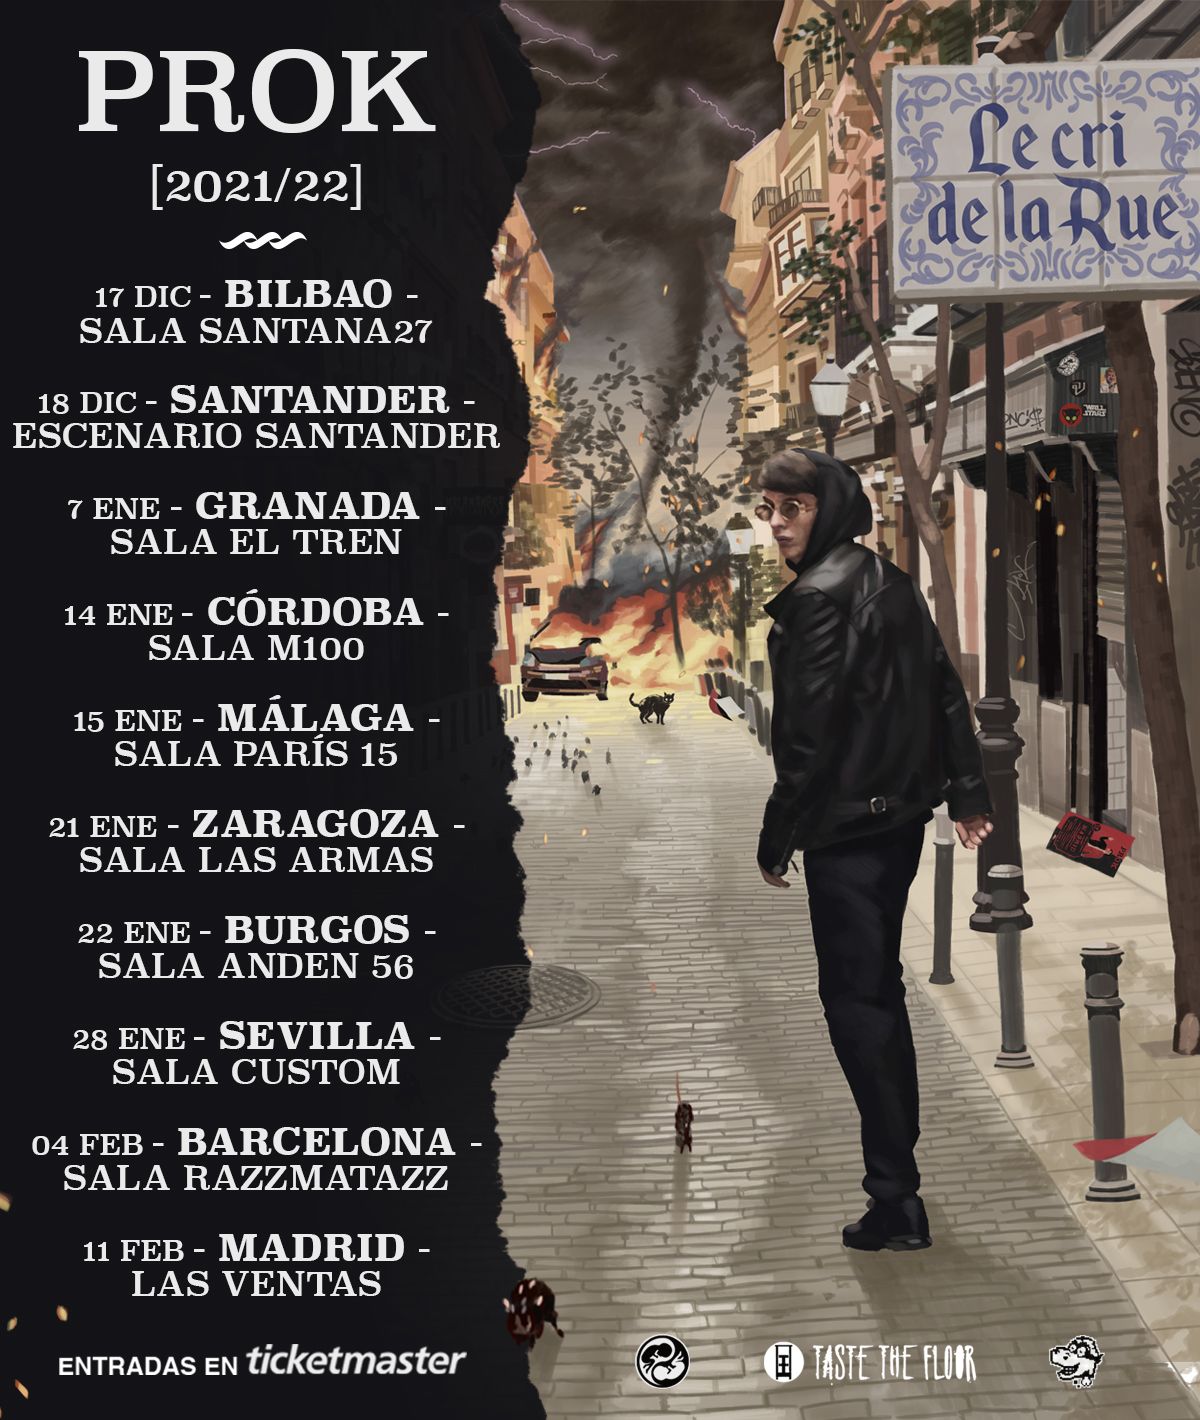 Prok presenta ‘Le cri de la rue’ en Madrid el próximo 11 de Febrero